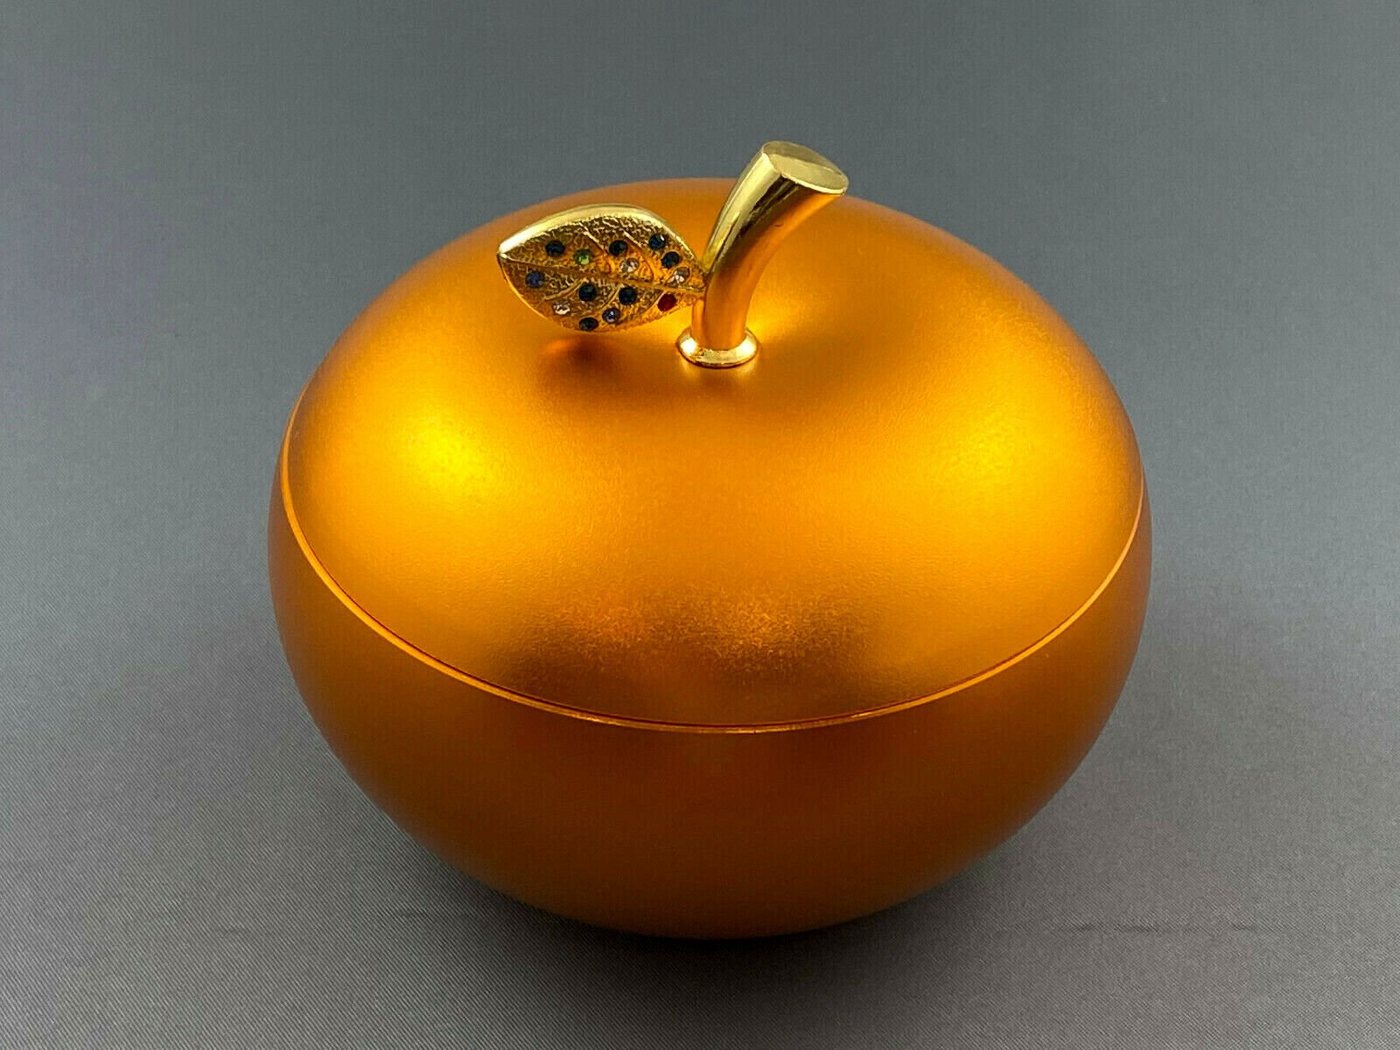 Florissima Aschenbecher besonderers schöner Aschenbecher in Apfel Form Schmuckstück in gold, schönes Schmuckstück für Aufbewahrung mit Deckel von Florissima